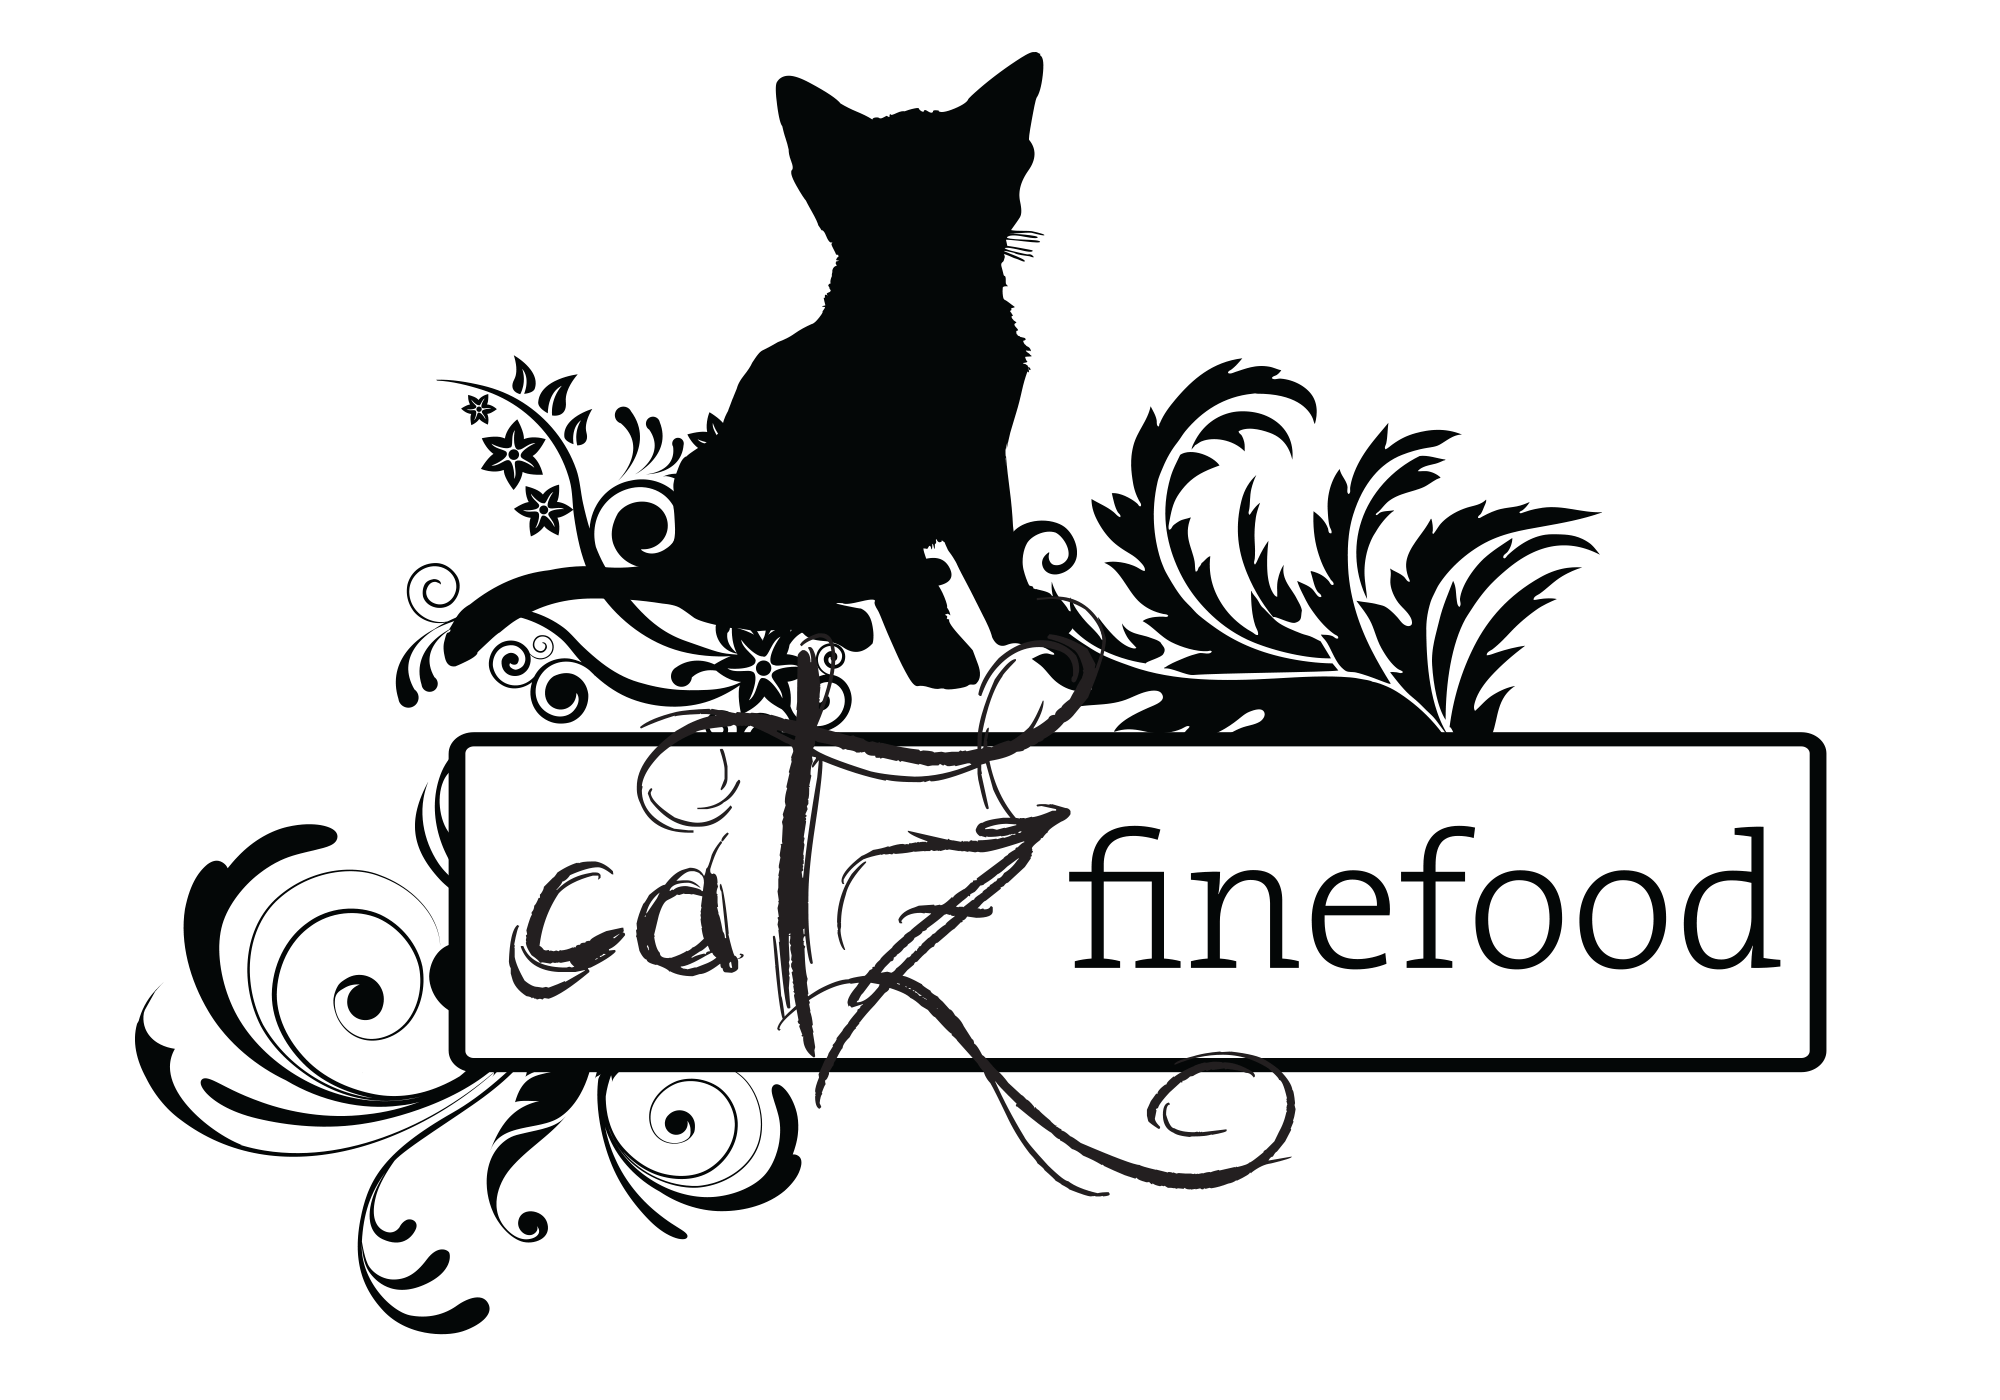 Catz Fine Food